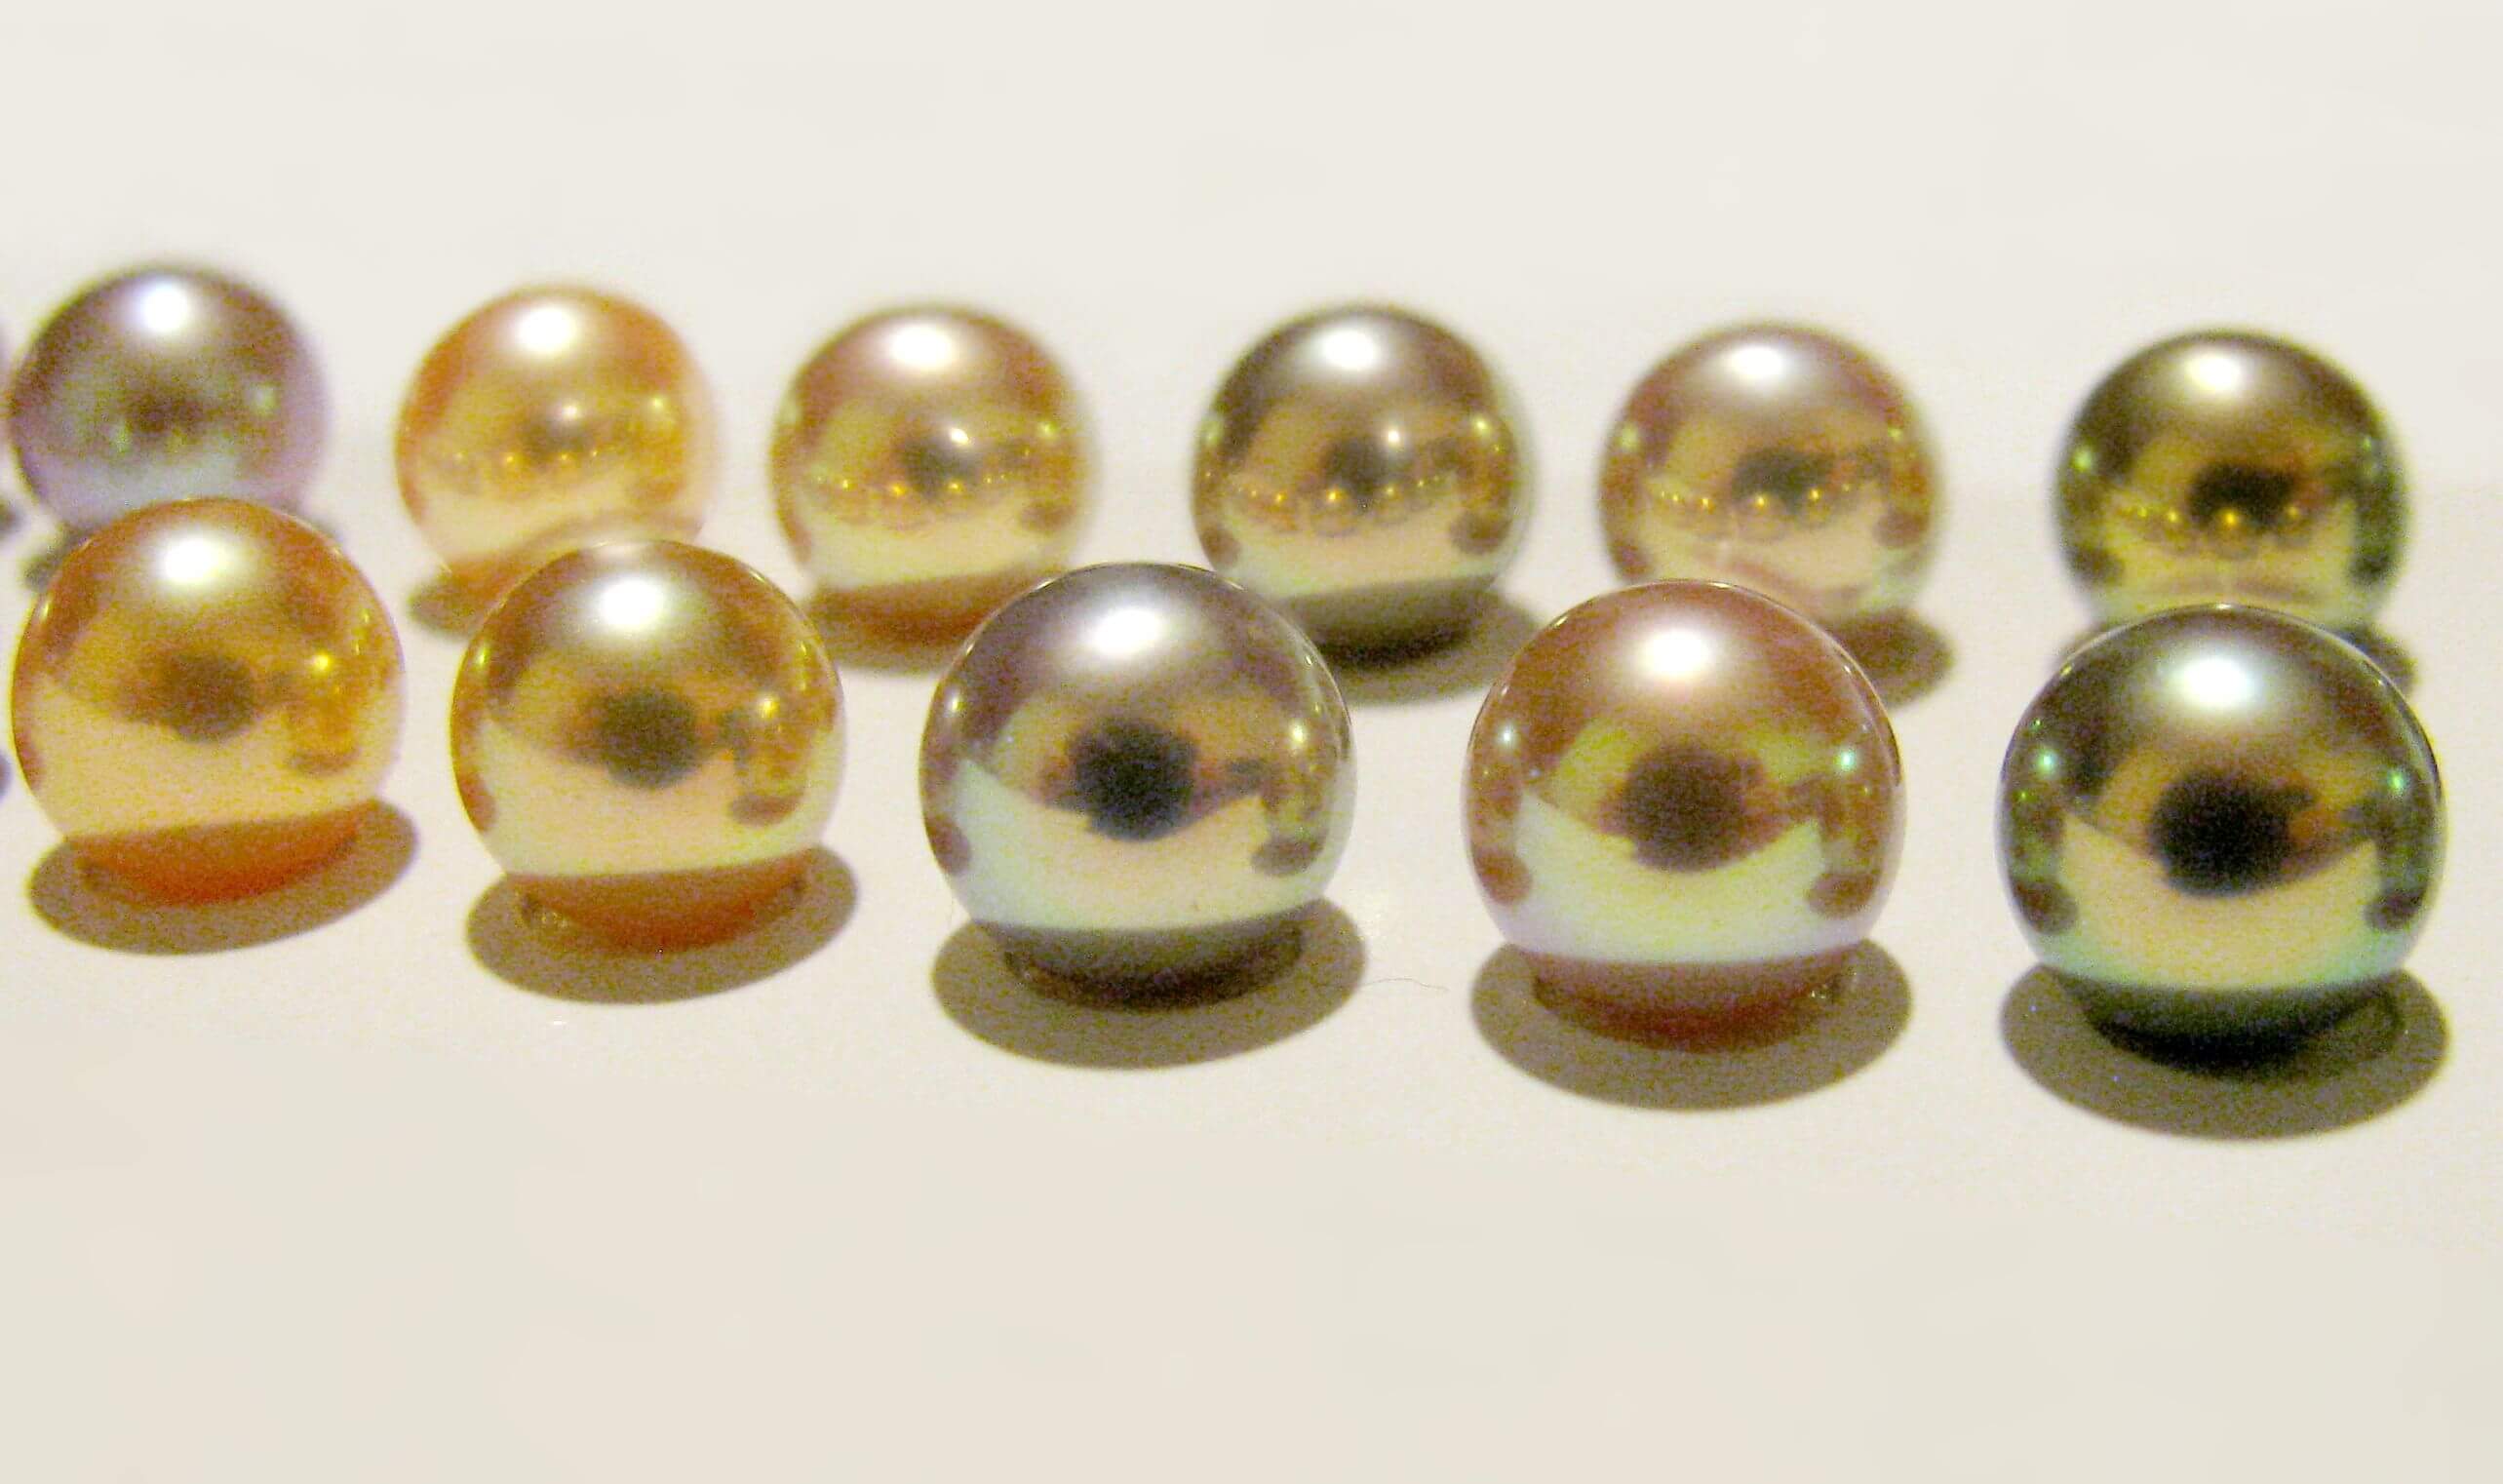 Perły słodkowodne wysokiej klasy - tanie perły też mogą być piękne, choć jest to rzadkość.